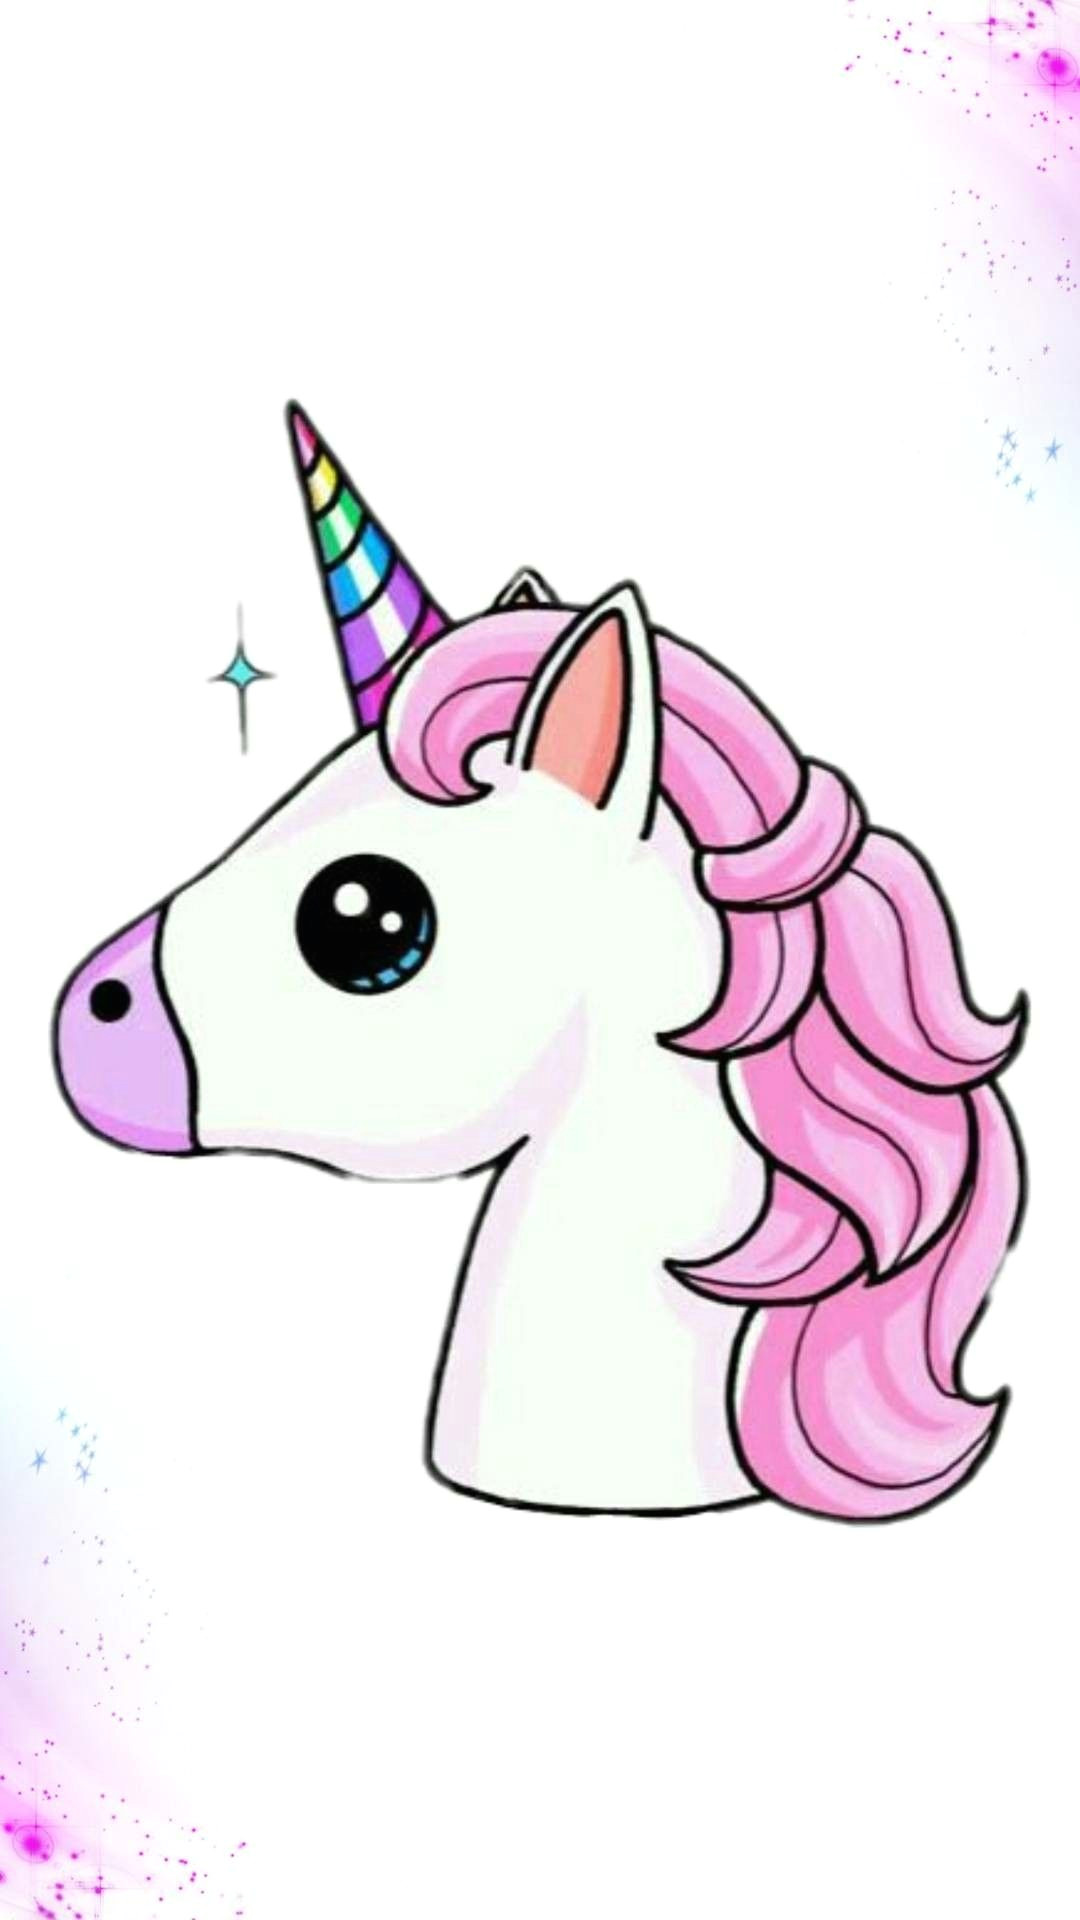 Cute Cartoon Unicorn Drawing Pin by Tammy Davis On Unicorns Pinterest Unicorn Wallpaper and